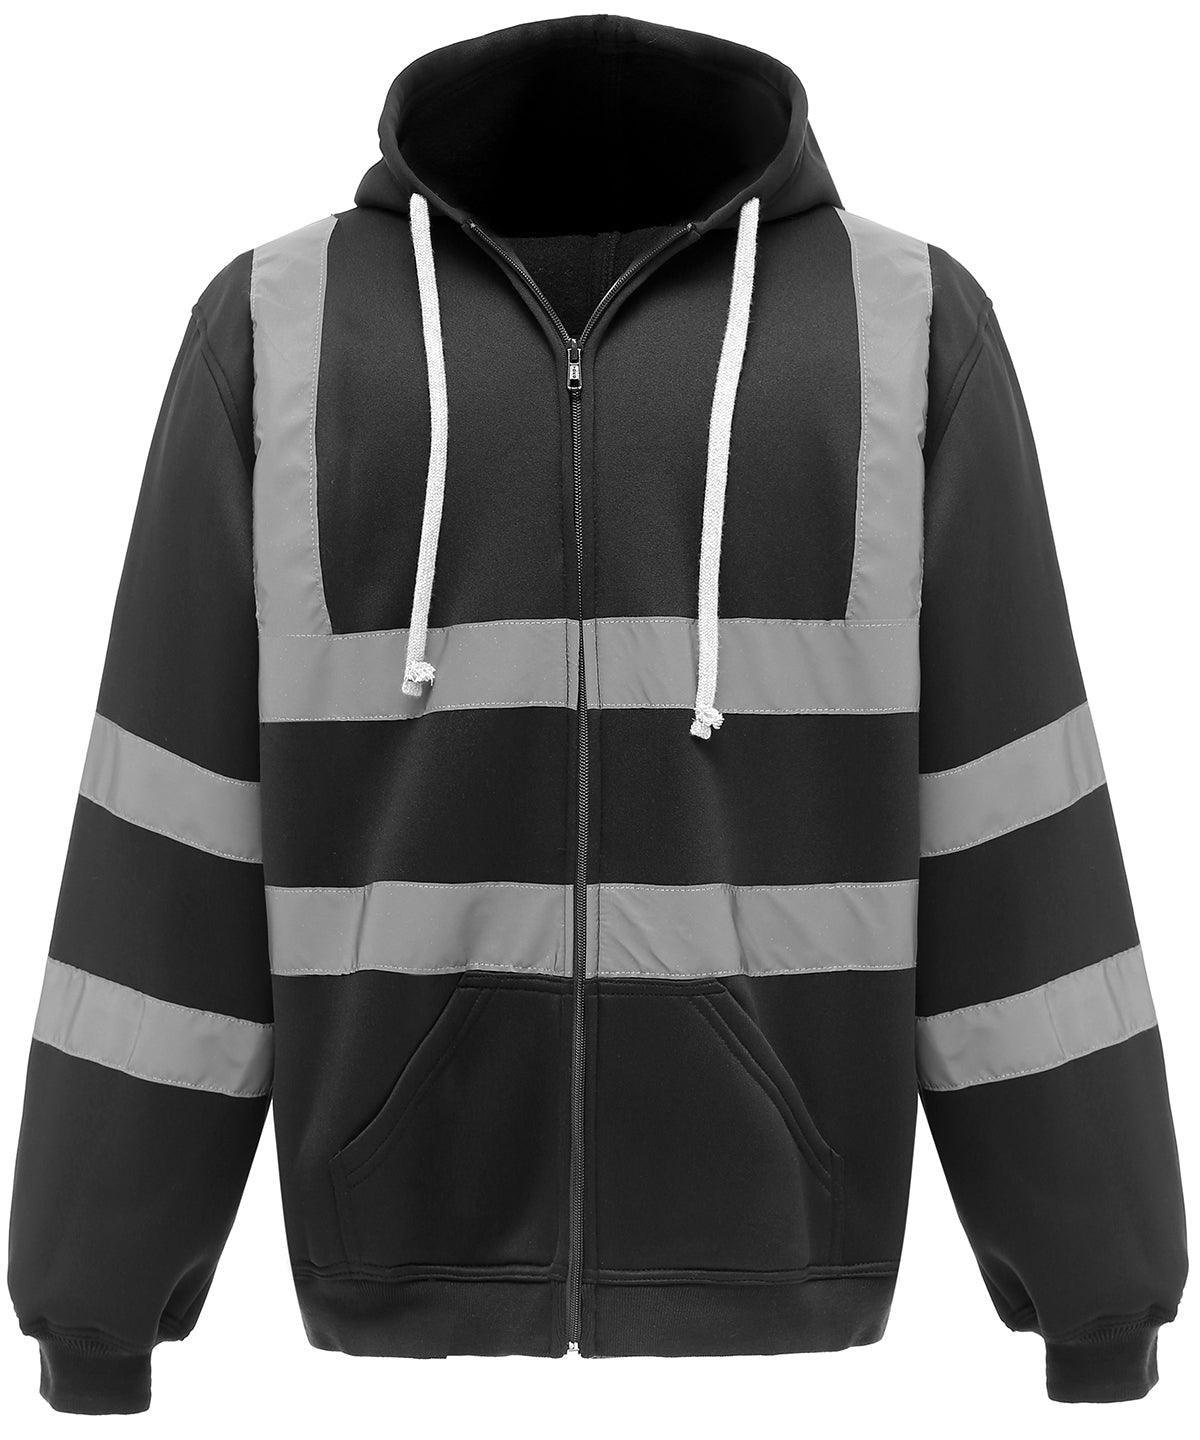 Black - Hi-vis zip hoodie (HVK07) Hoodies Yoko Hoodies, Must Haves, Plus Sizes, Safetywear Schoolwear Centres